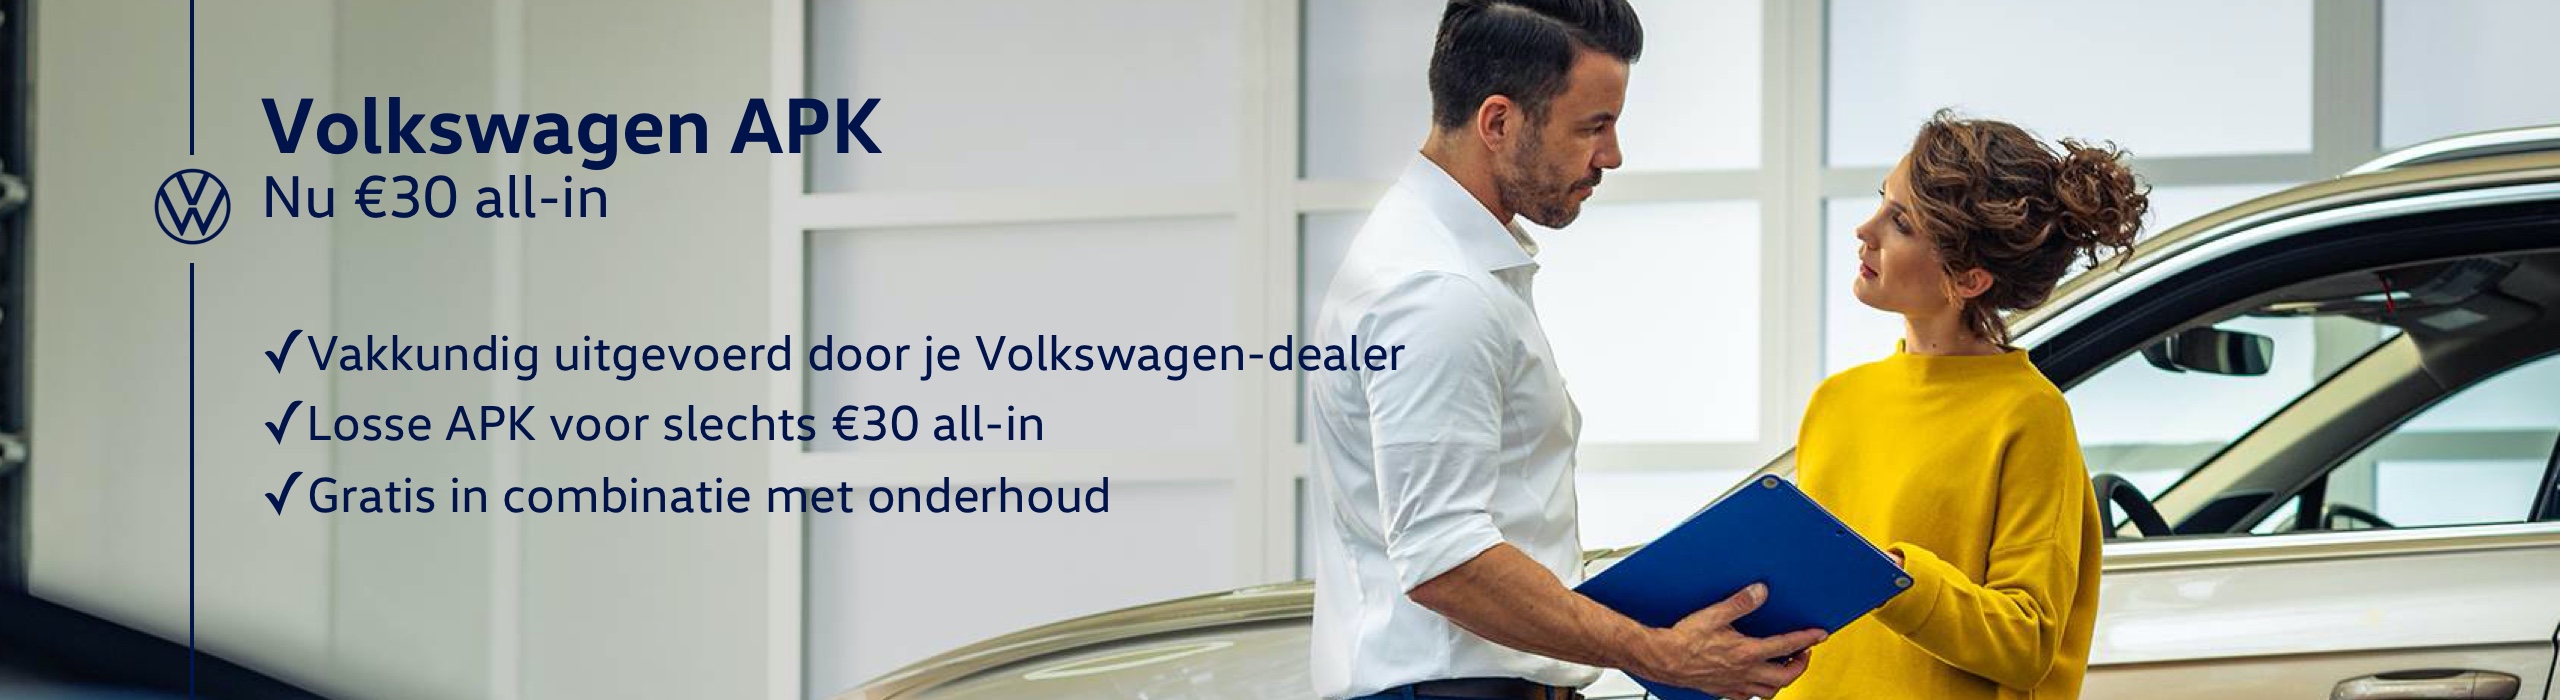 Volkswagen apk 30 euro